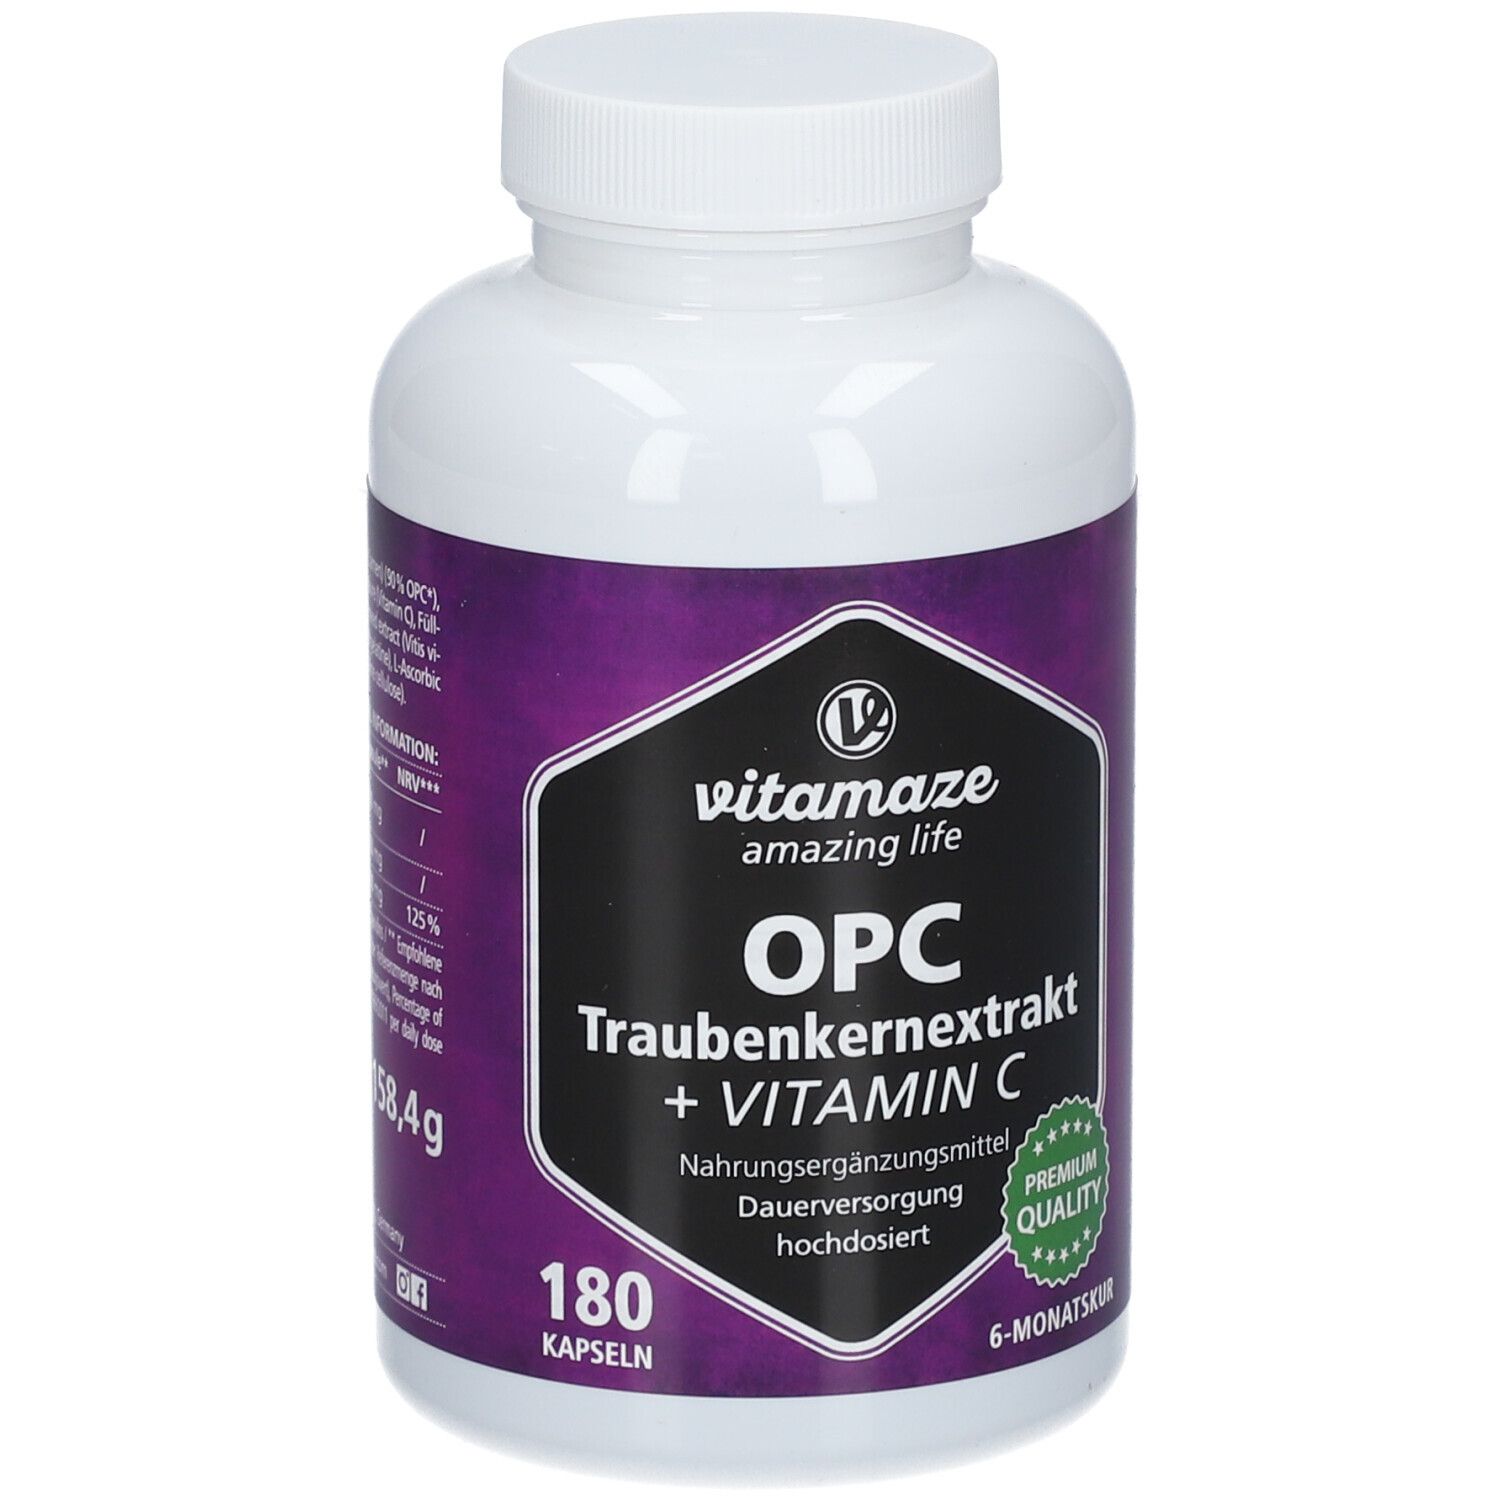 Vitamaze OPC TRAUBENKERNEXTRAKT hochdosiert + Vitamin C